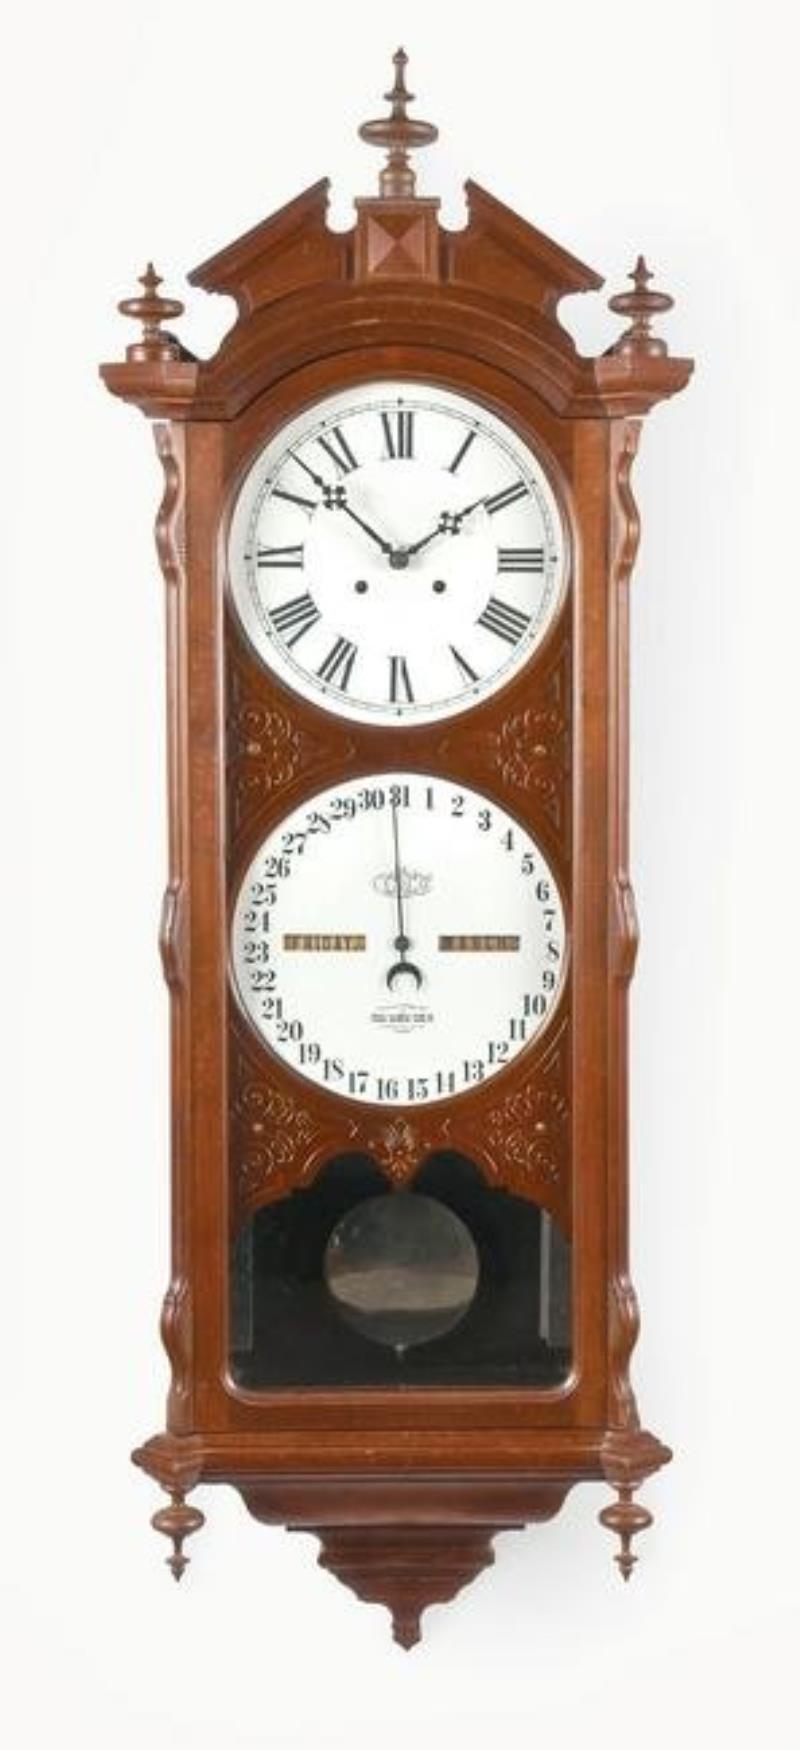 Ithaca Calendar Clock Co. No 2 Bank double dial calendar clock